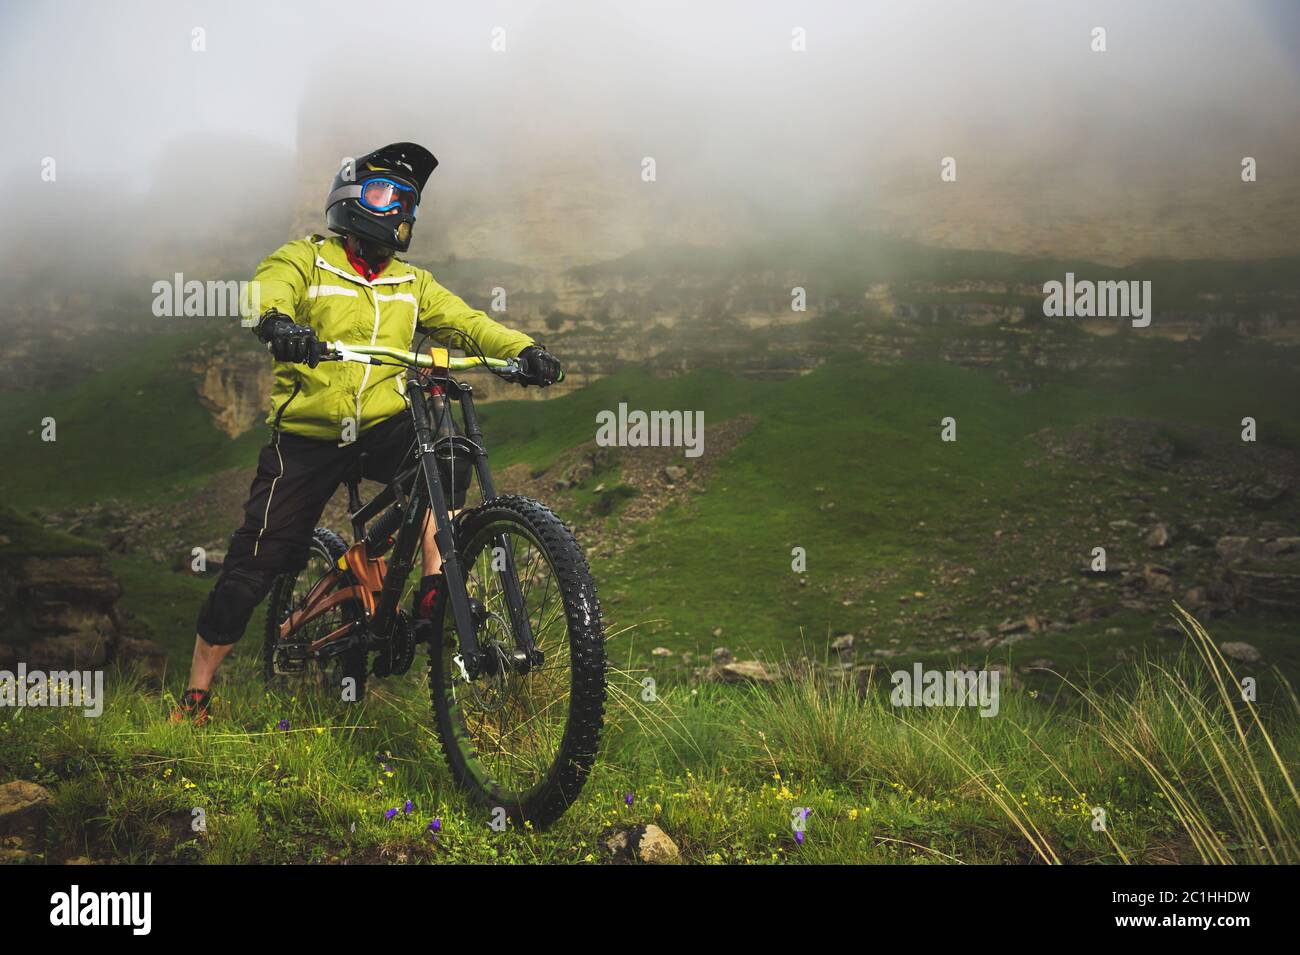 Ein erwachsener mtb-Radfahrer auf einem Mountainbike am Fuße einer Klippe, umgeben von grünem Gras. Niedrige Wolken. Nordkaukasus. Russland Stockfoto